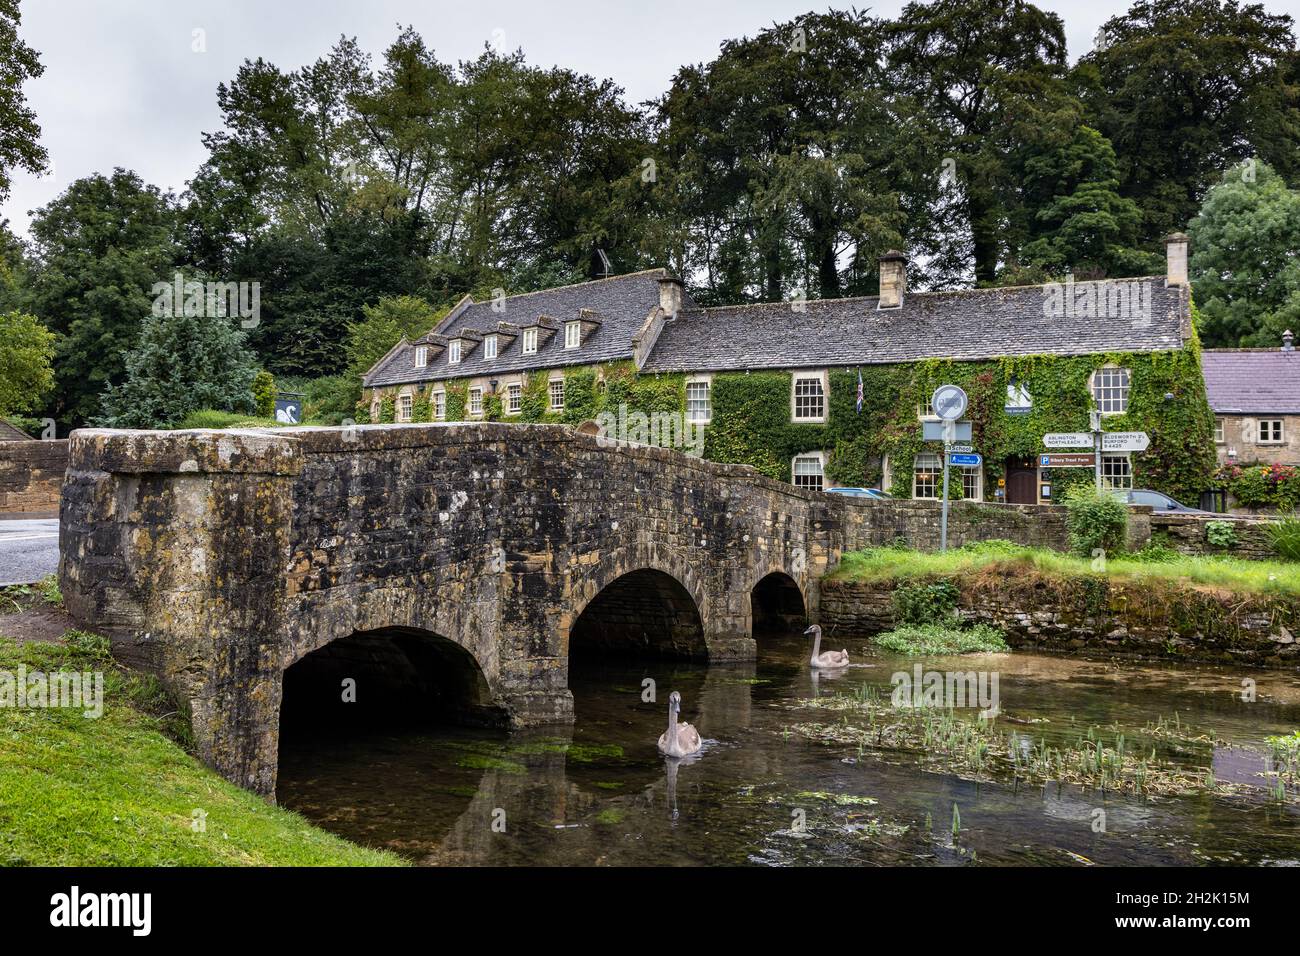 Le pont en pierre sur la rivière Coln et l'ivy Covered Swan Hotel dans le village pittoresque de Bibury, dans les Cotswolds du Gloucestershire, en Angleterre. Banque D'Images